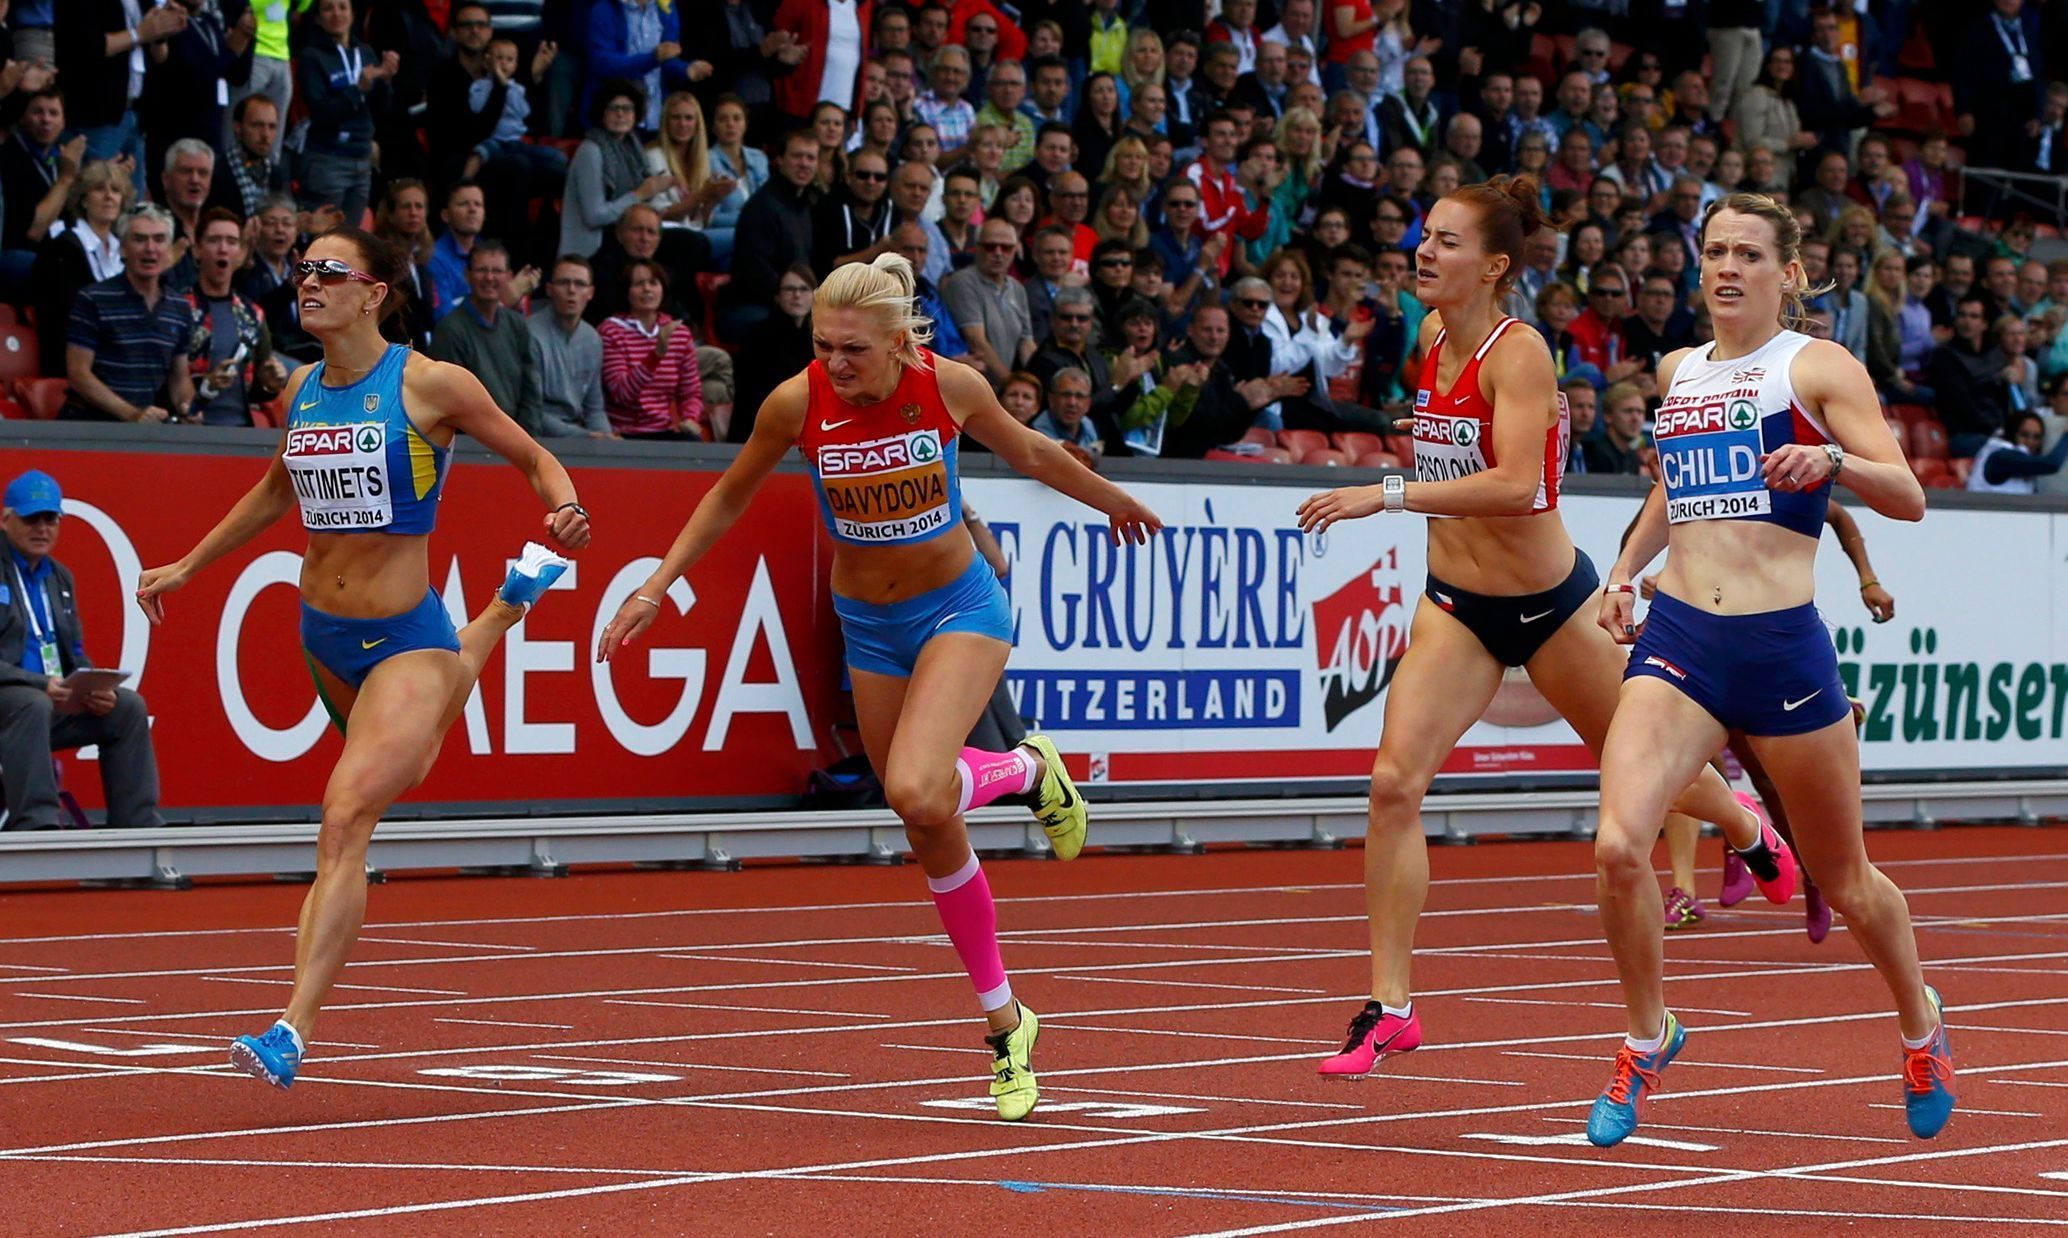 ME v atletice 2014, 400 m př.: Anna Titimeocová, Irina Davydovová, Elidh Childová a Denisa Rosolová